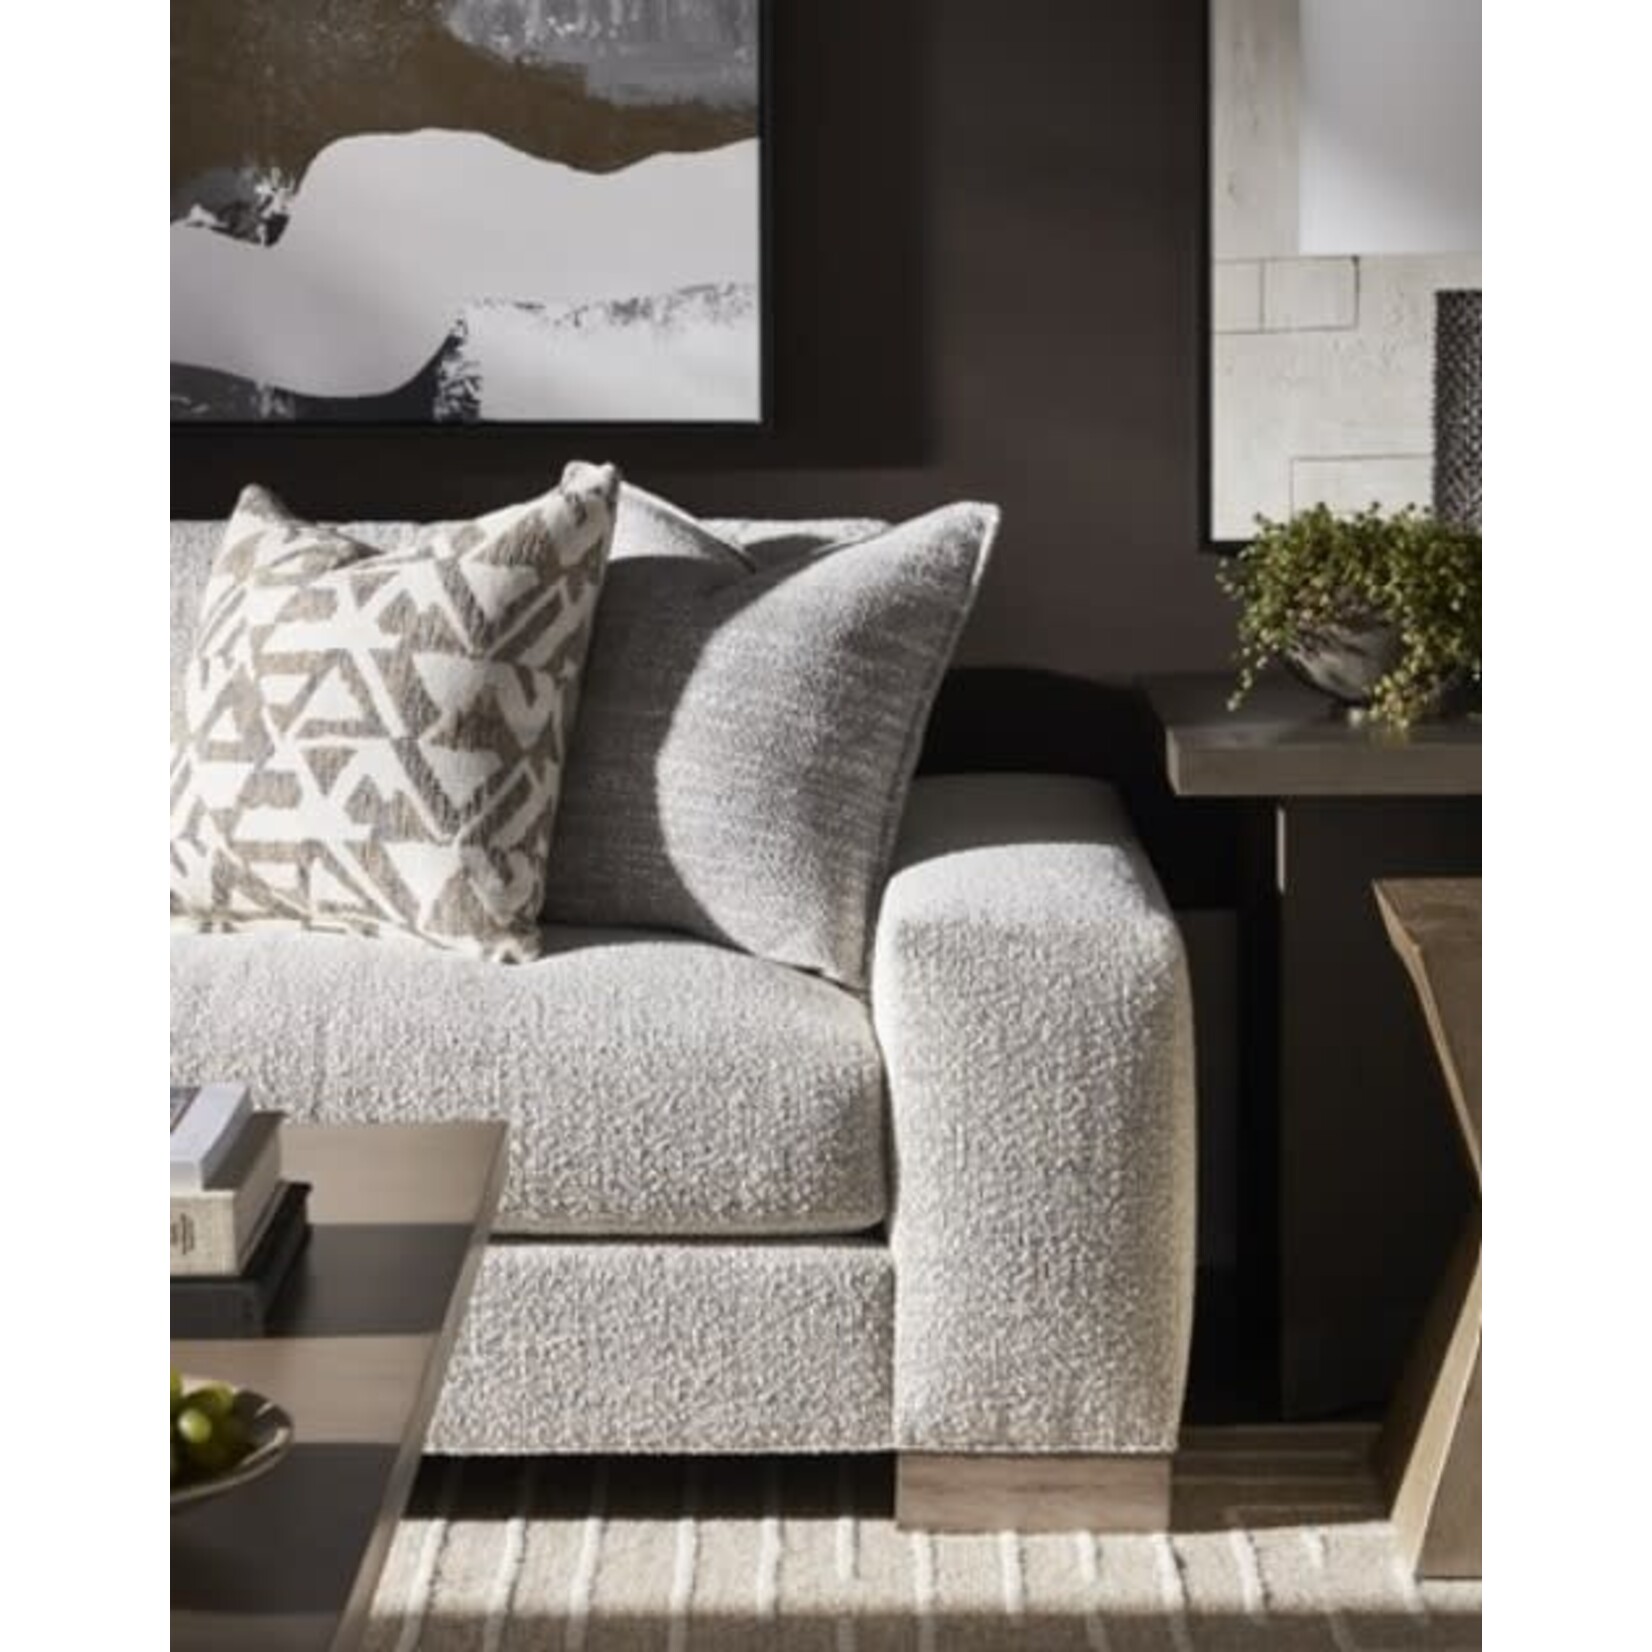 Vanguard Furniture Burke Extended Sofa Izzy Linen